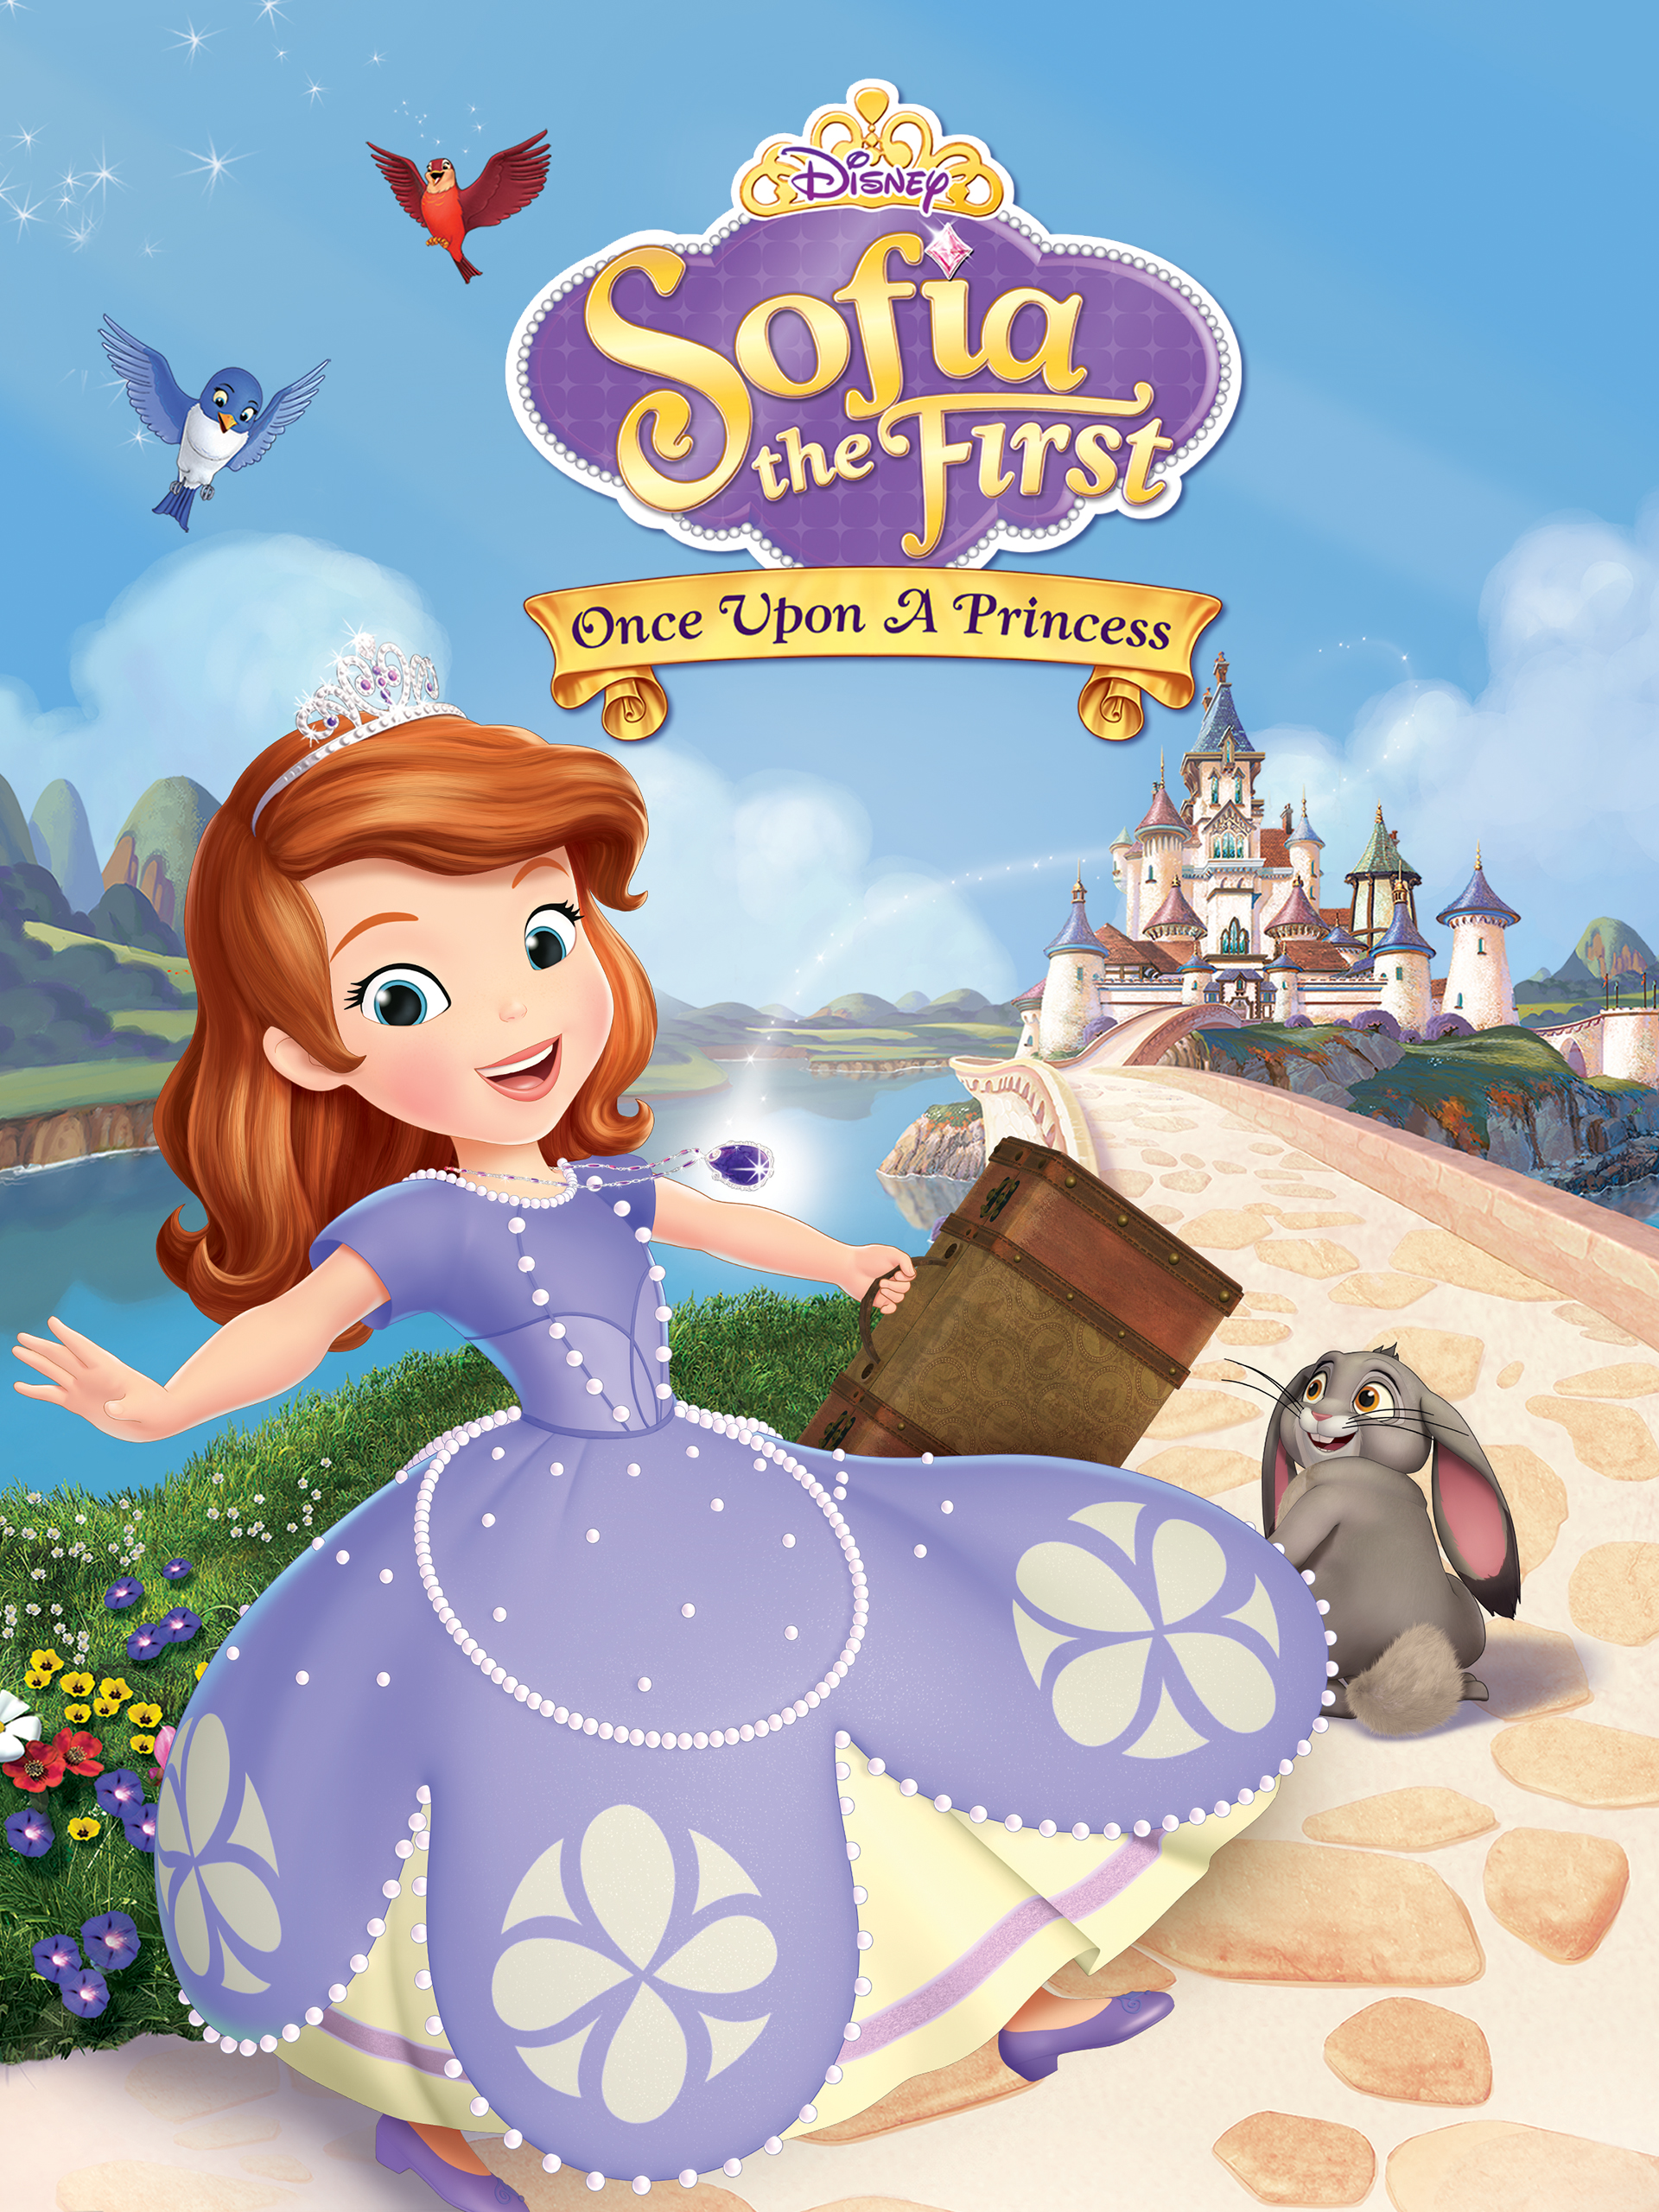 Princesas Sofia: Promoções